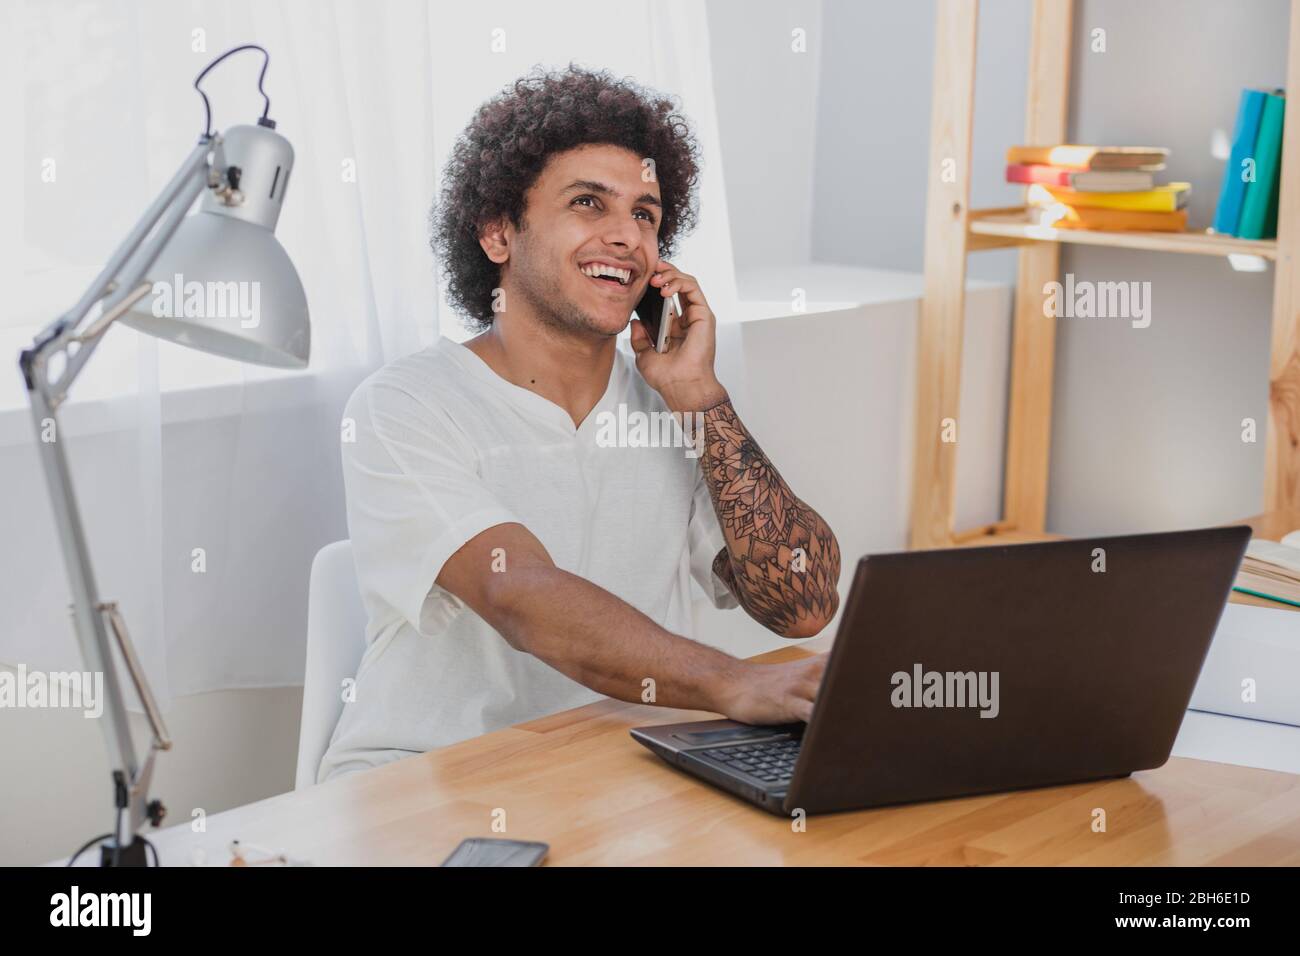 Fröhlicher afrikaner, der am Laptop arbeitet und am Handy spricht, während er an seinem Arbeitsplatz im modernen Büro sitzt Stockfoto